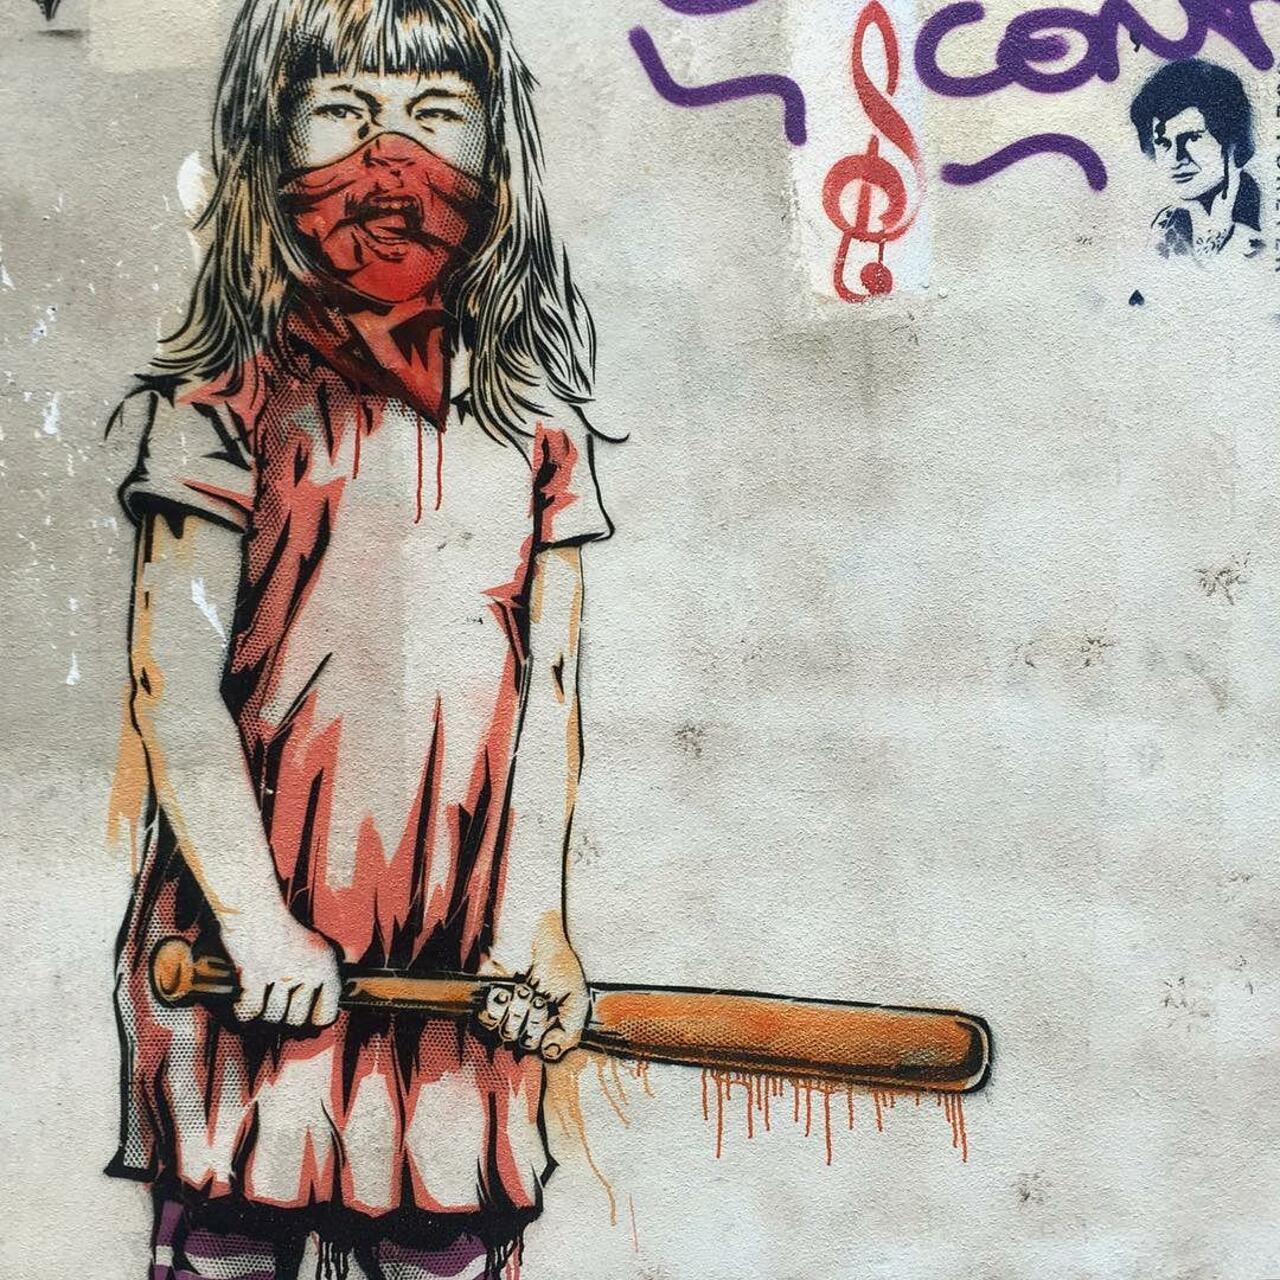 #Paris #graffiti photo by @catscoffeecreativity http://ift.tt/1jJB7Xj #StreetArt http://t.co/Ts20F43cMk